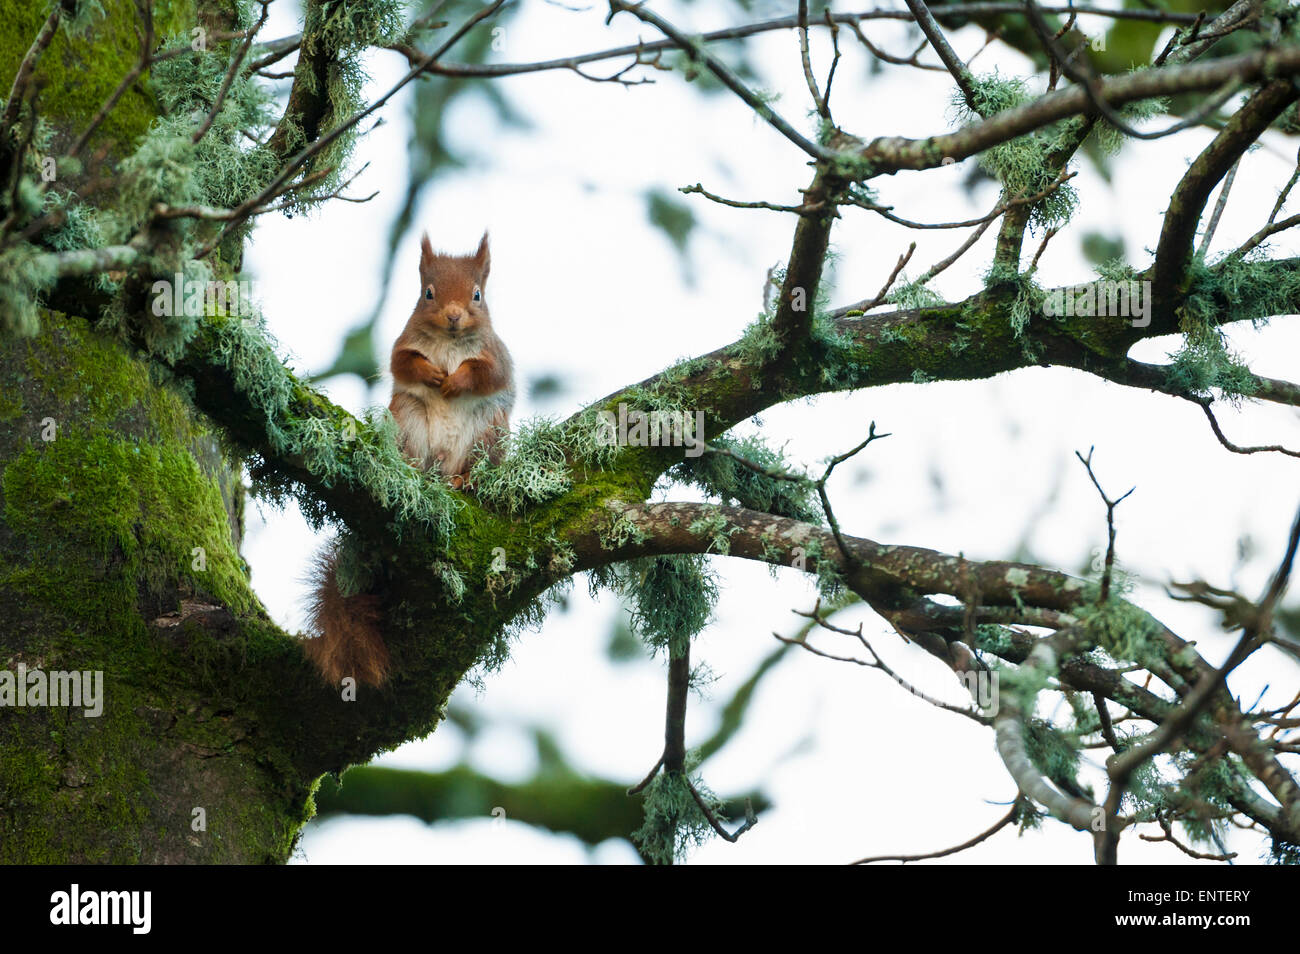 Red scoiattolo (Sciurus vulgaris) in una struttura ad albero in Galloway Forest National Park, Scotland, Regno Unito Foto Stock